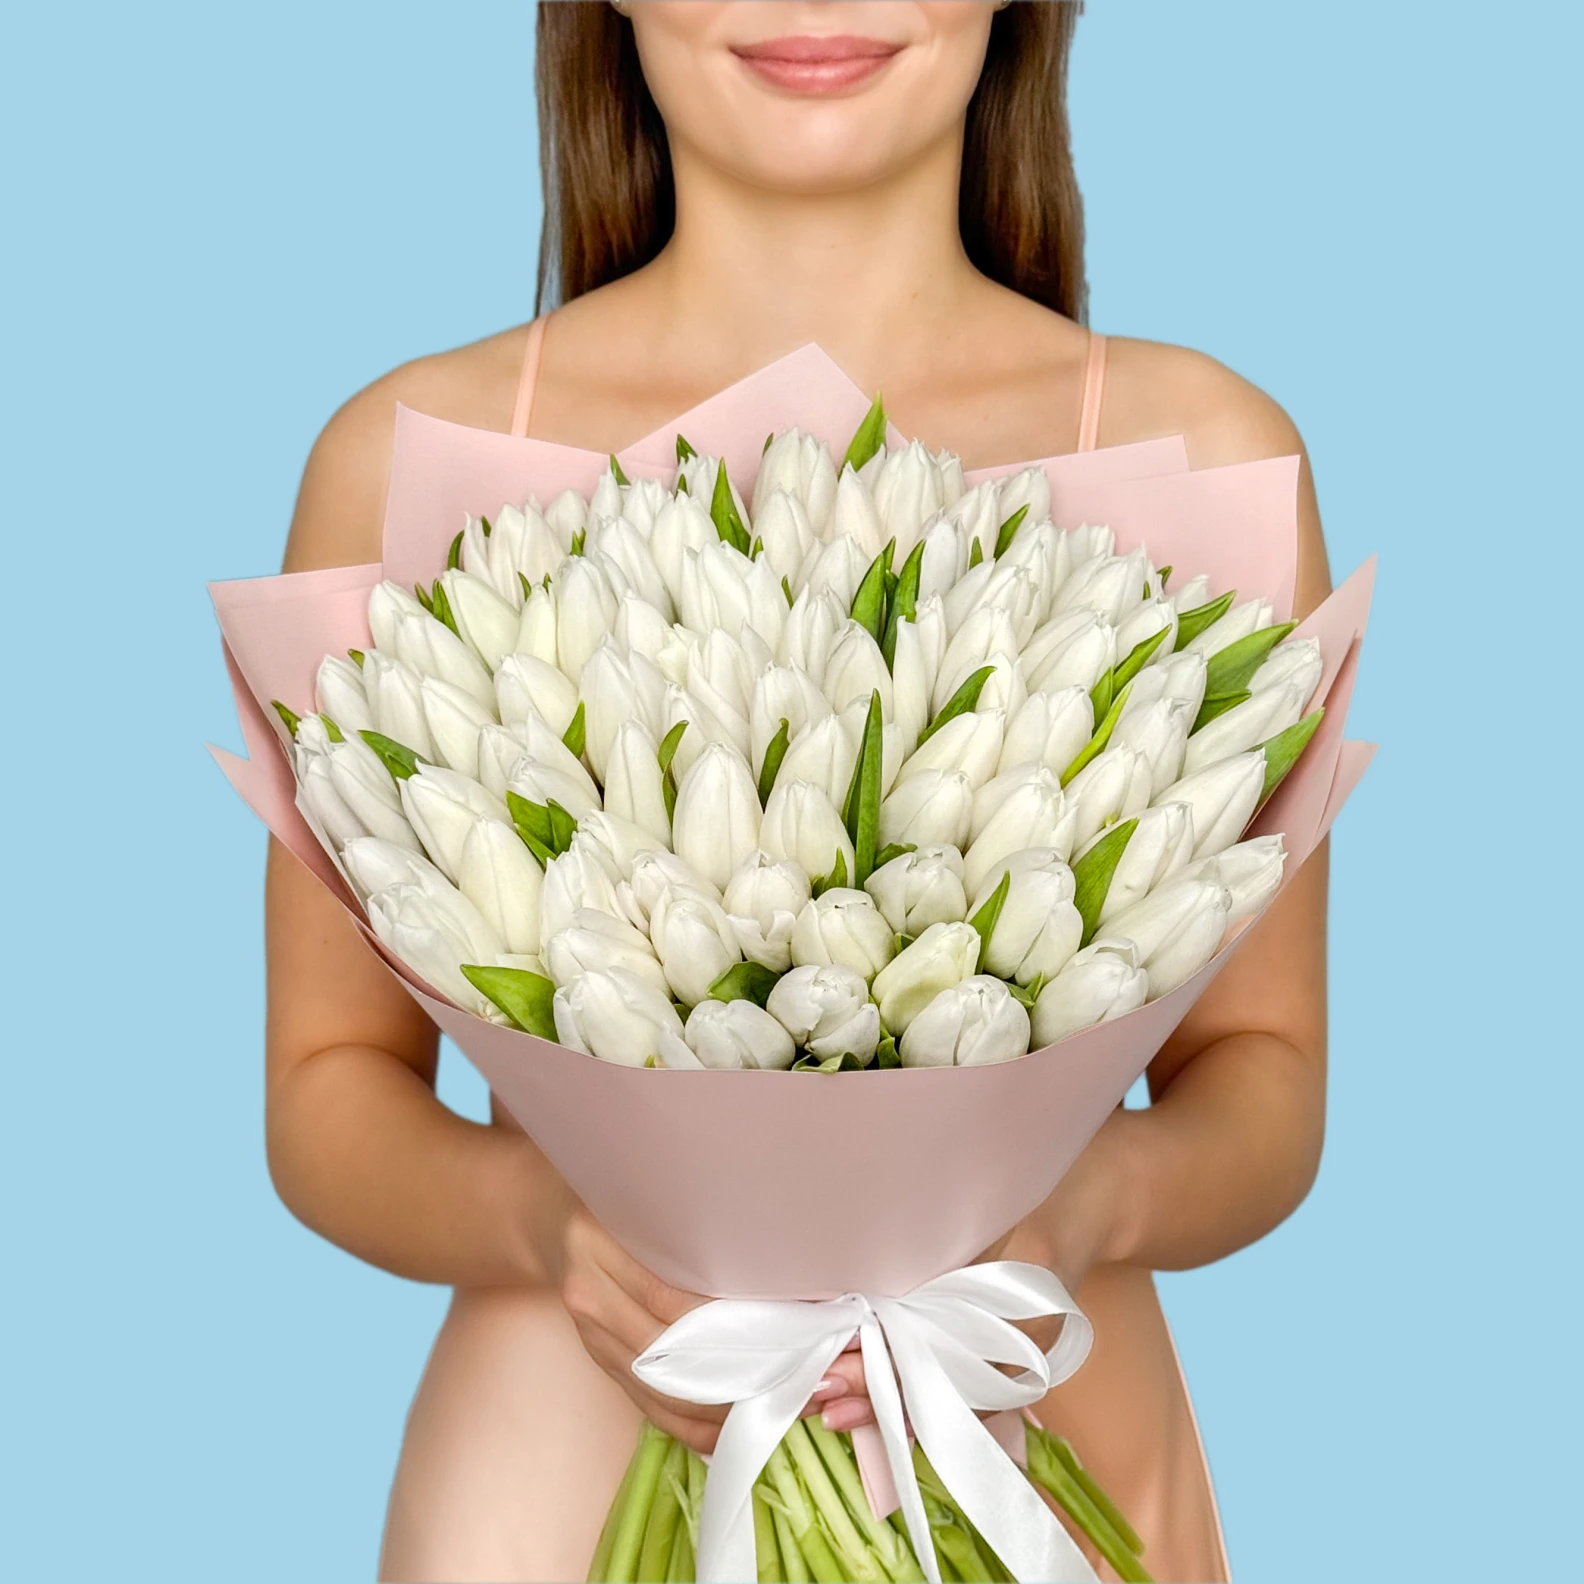 100 White Tulips - image №1